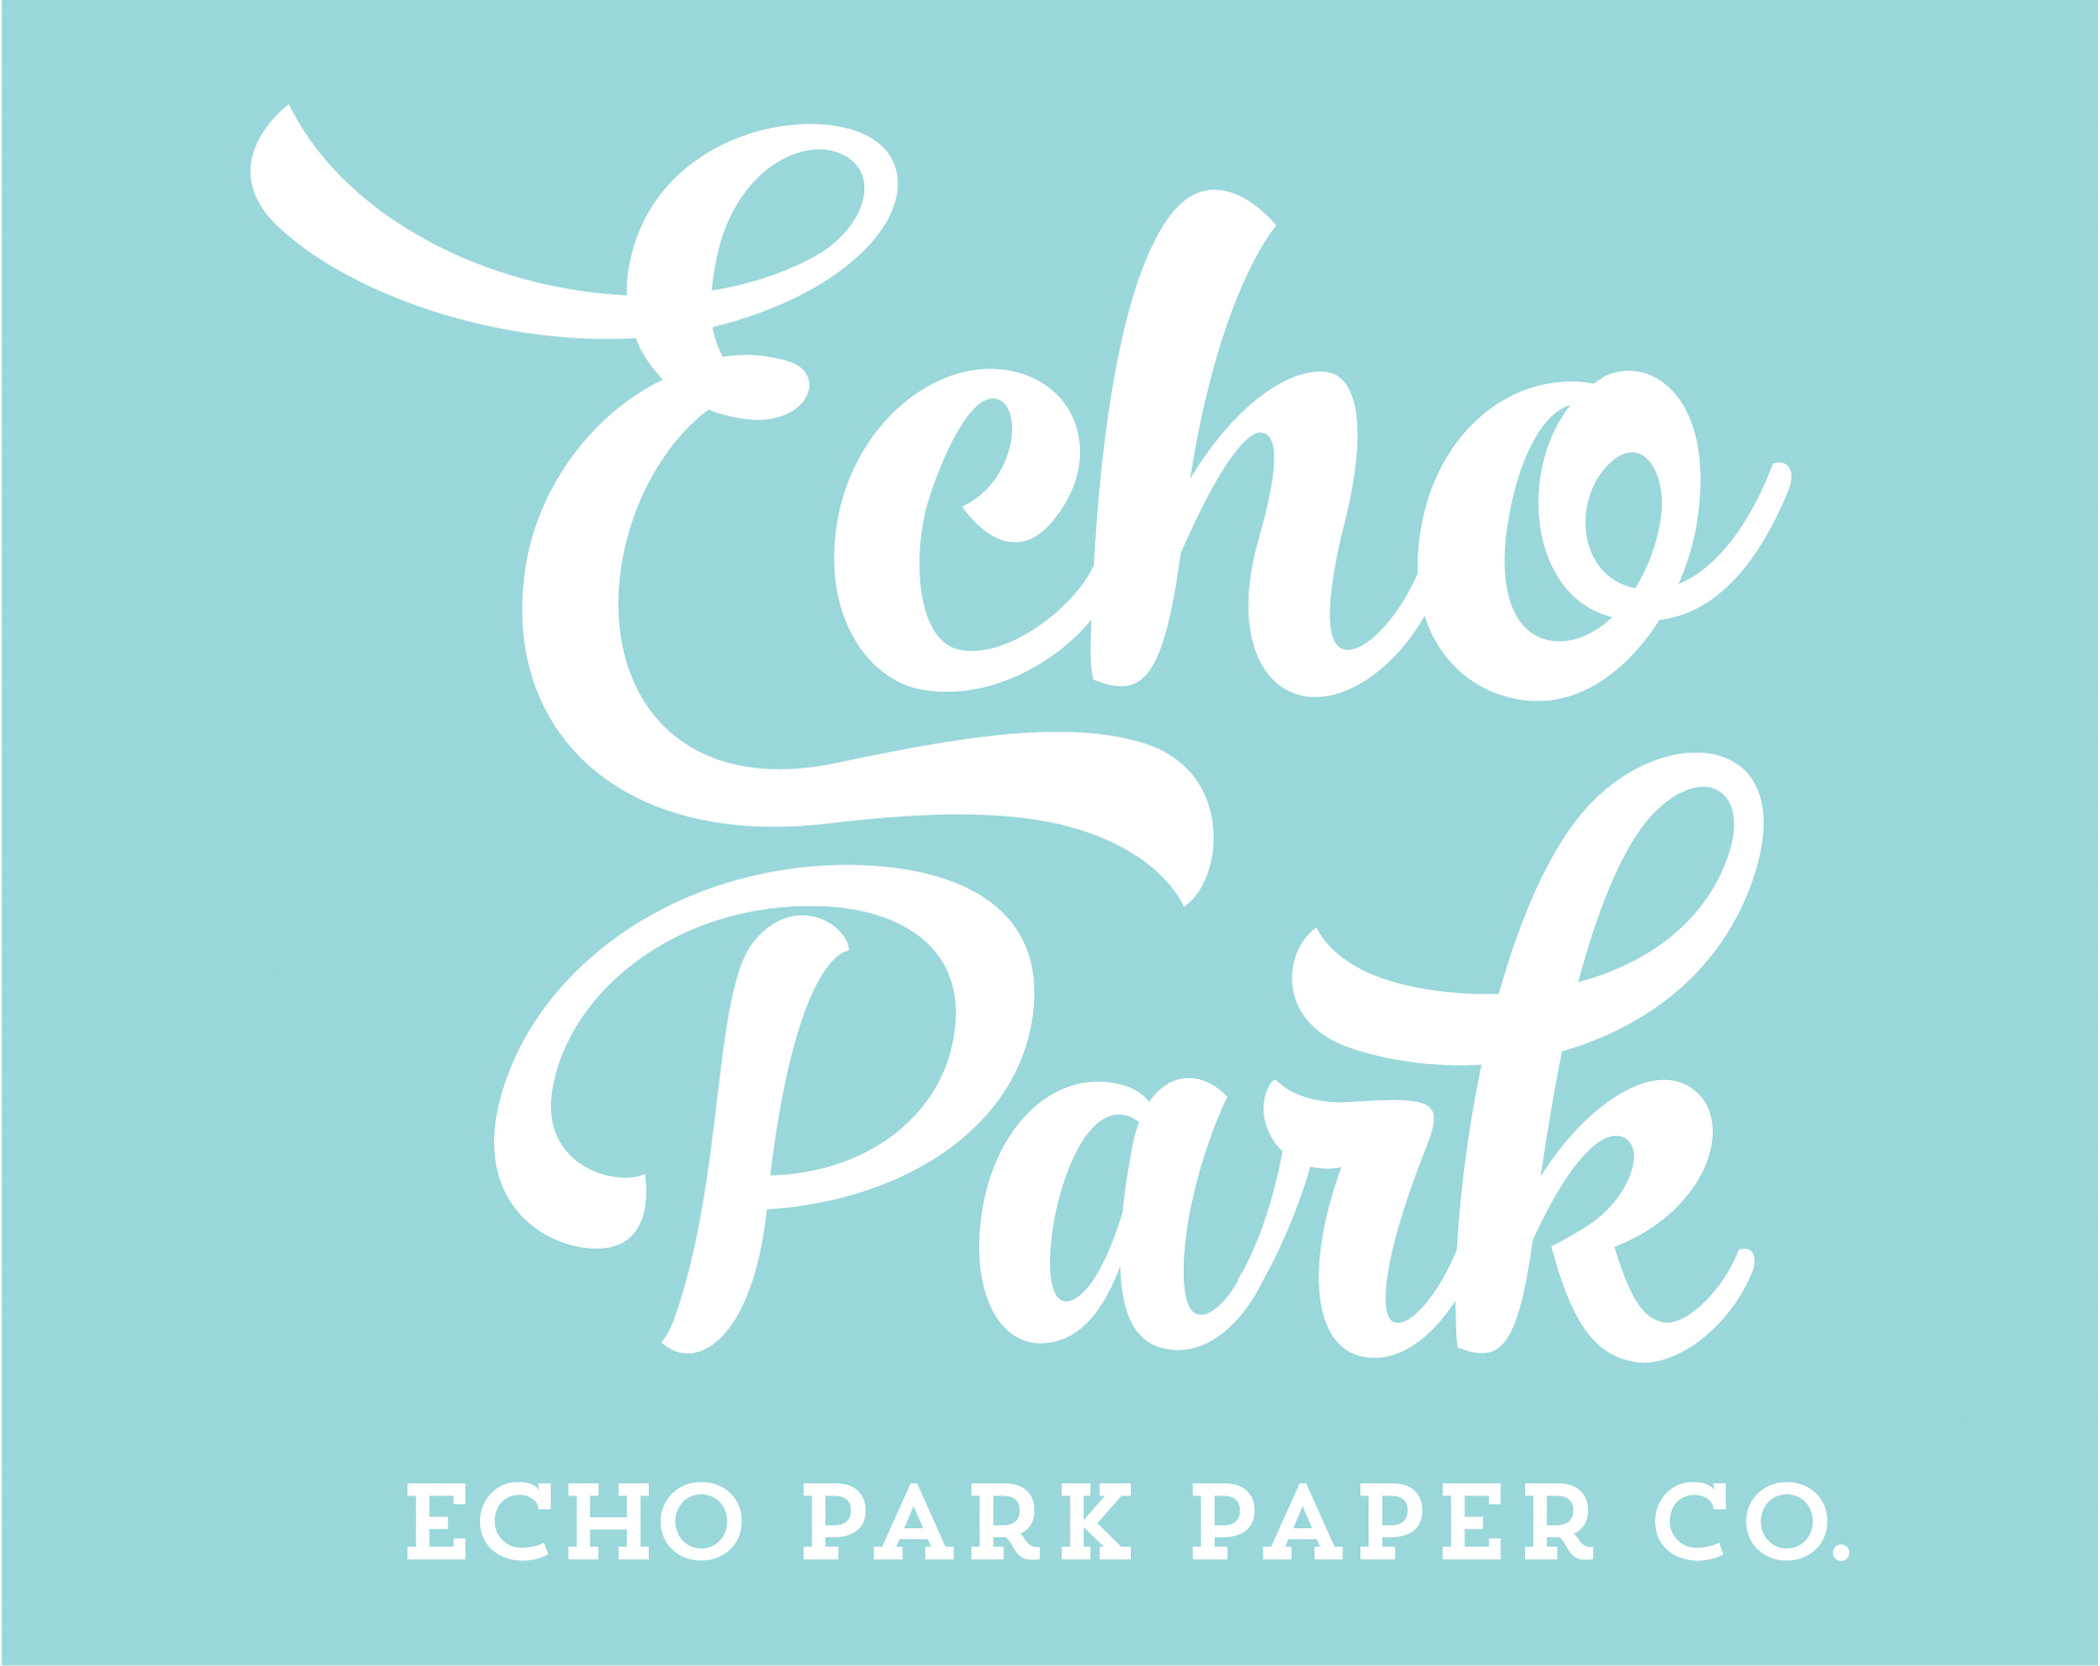 Echo Park Paper